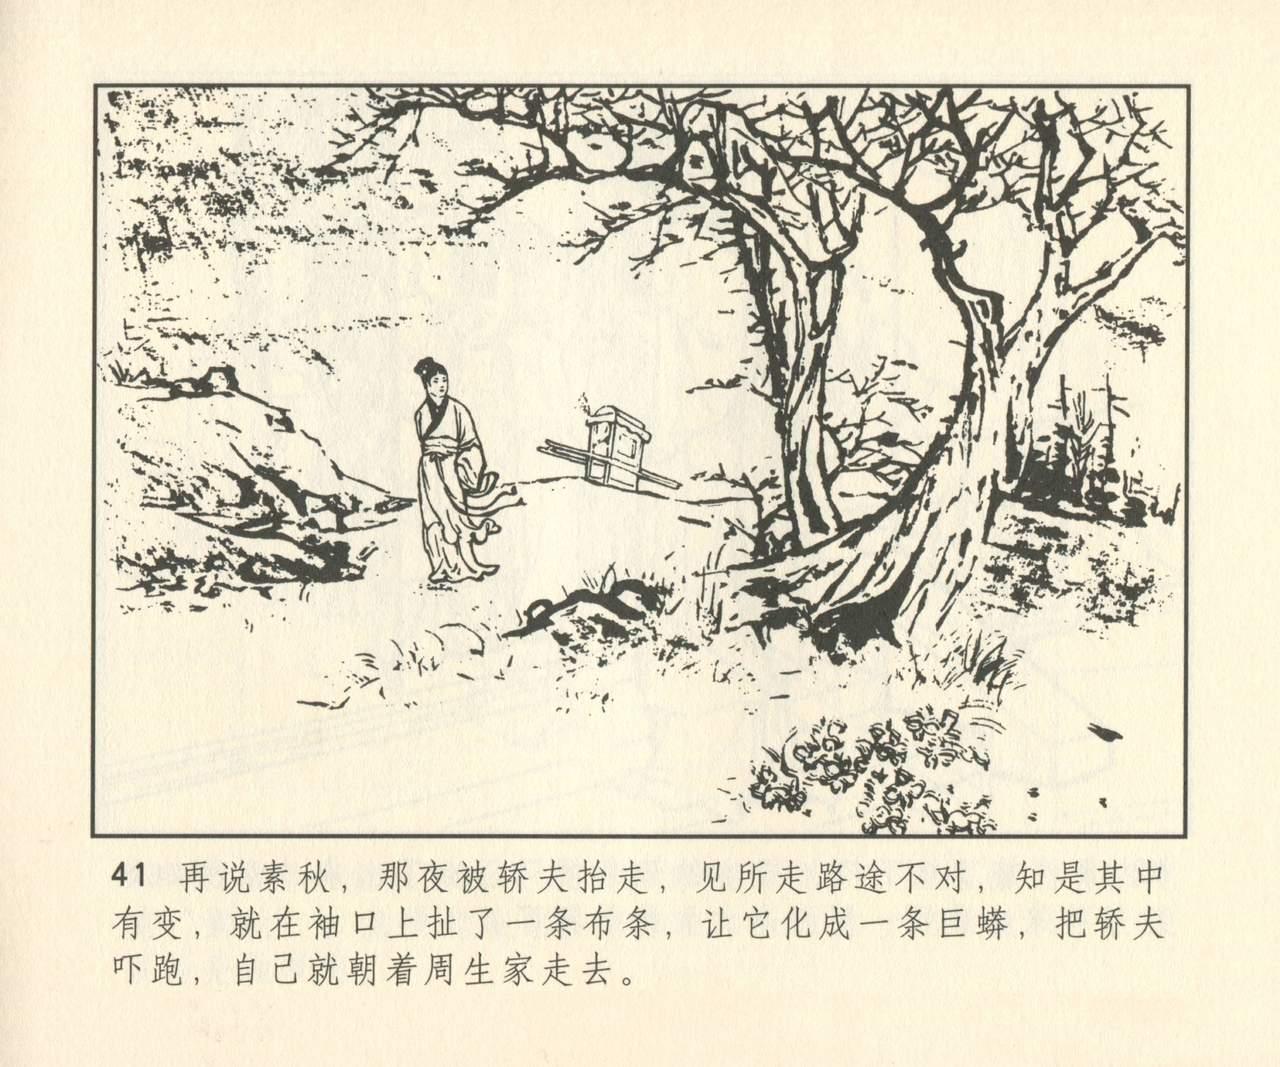 聊斋志异 张玮等绘 天津人民美术出版社 卷二十一 ~ 三十 321